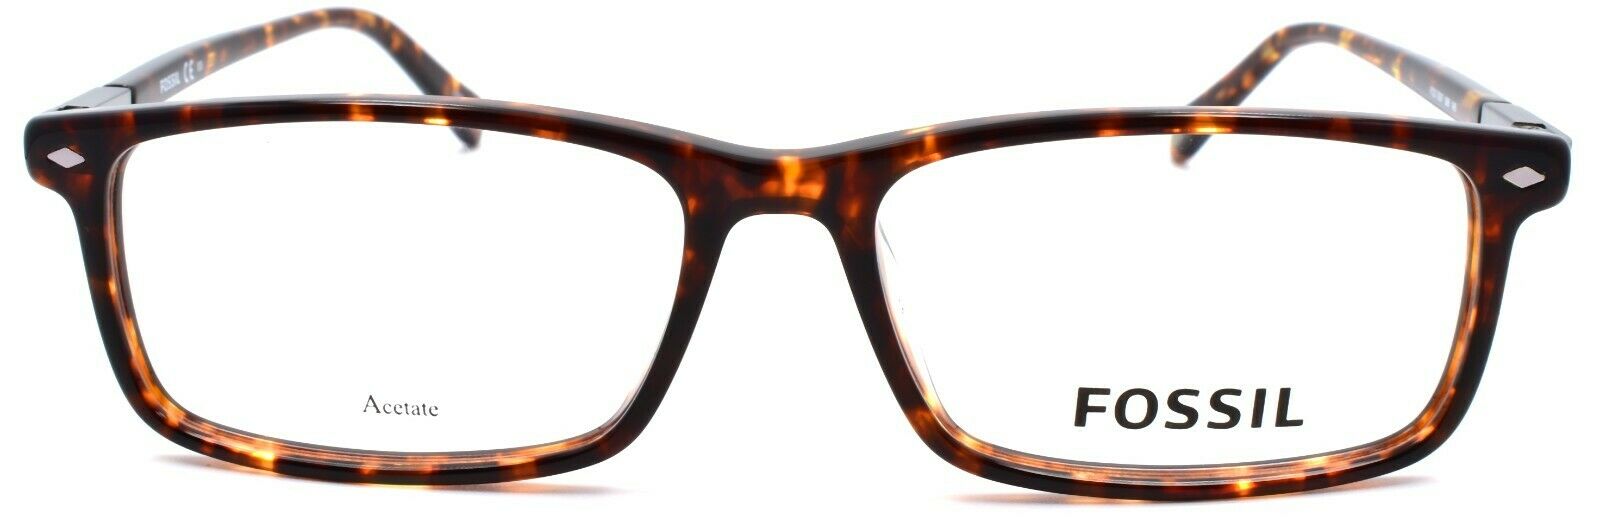 2-Fossil FOS 7067 086 Men's Eyeglasses Frames 55-16-145 Dark Havana-716736205069-IKSpecs